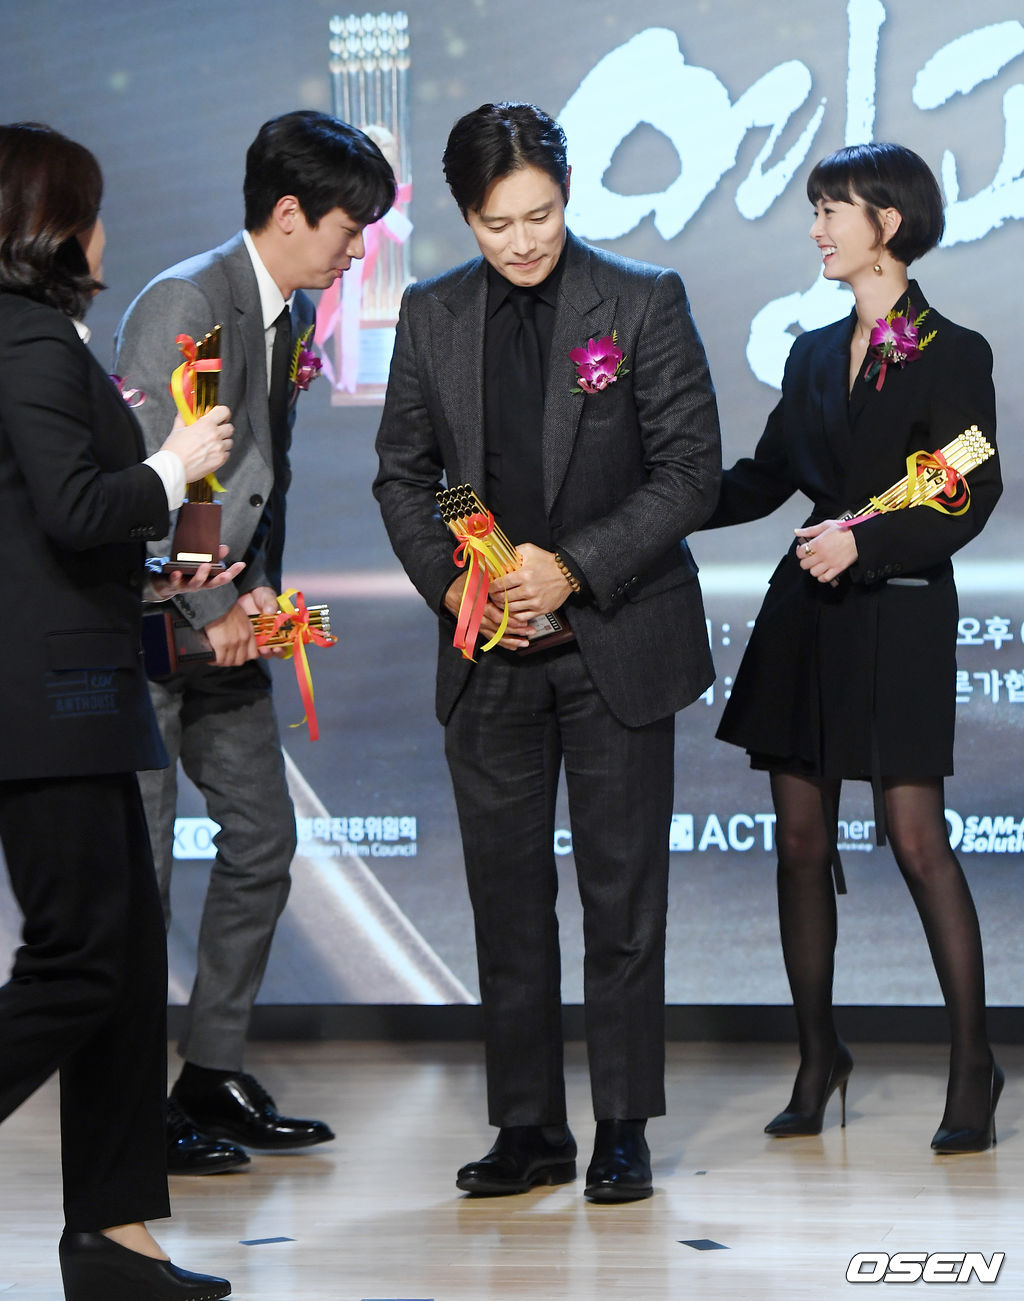 여우 주연상을 수상한 배우 정유미가 무대 위에서 남우조연상을 수상한 박정민에게 축하를 건네고 있다.  / rumi@osen.co.kr